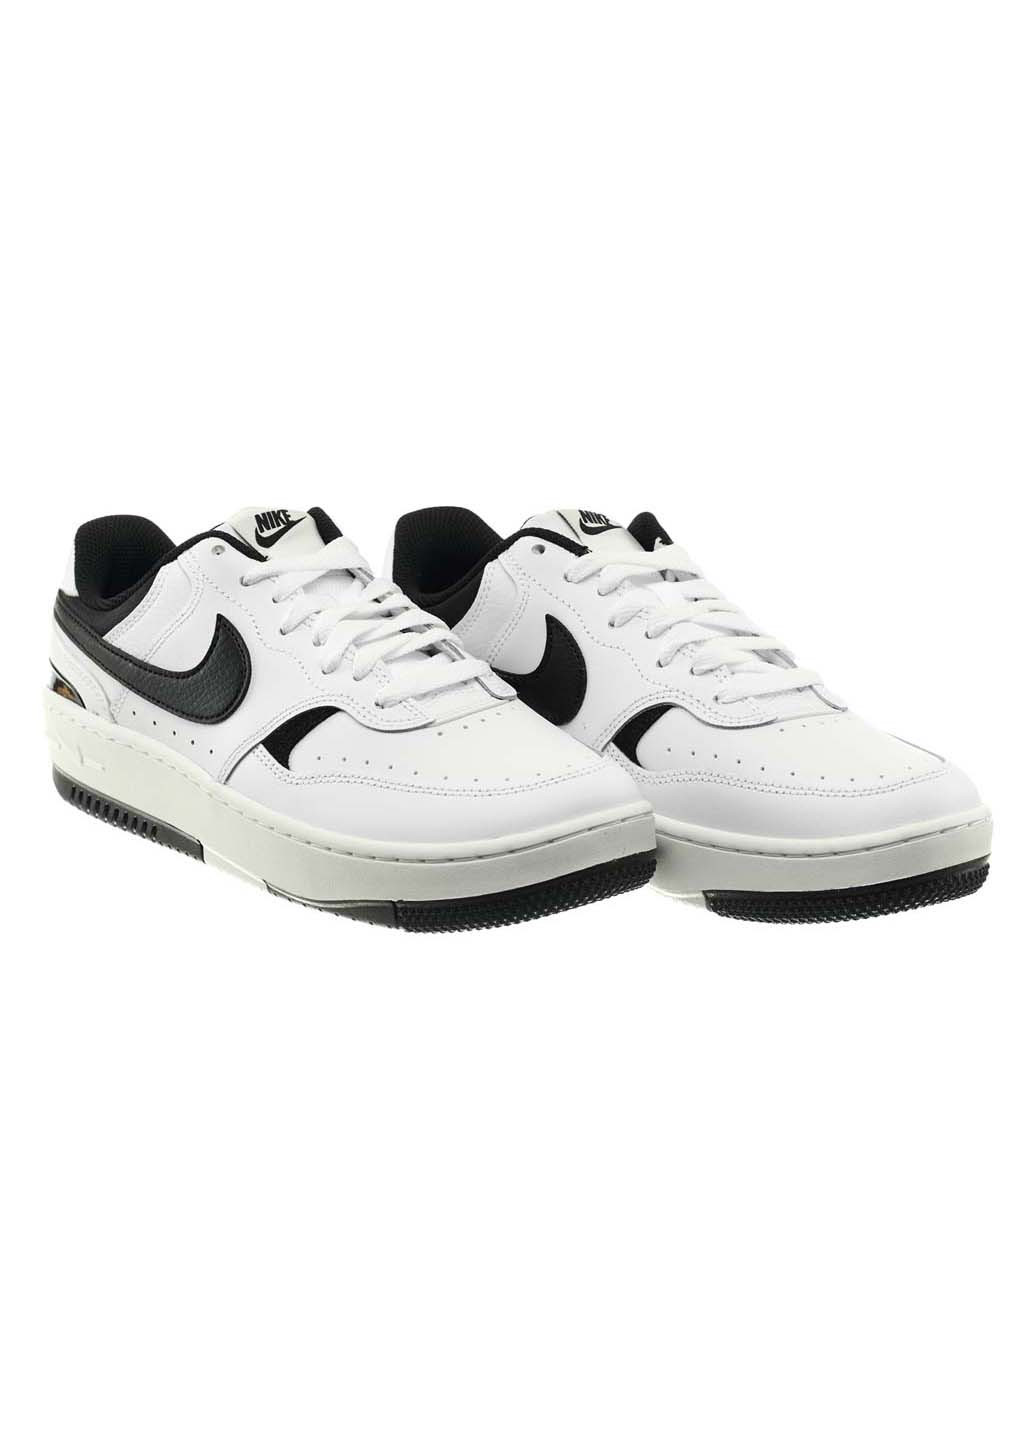 Чорно-білі осінні кросівки gamma force shoes Nike